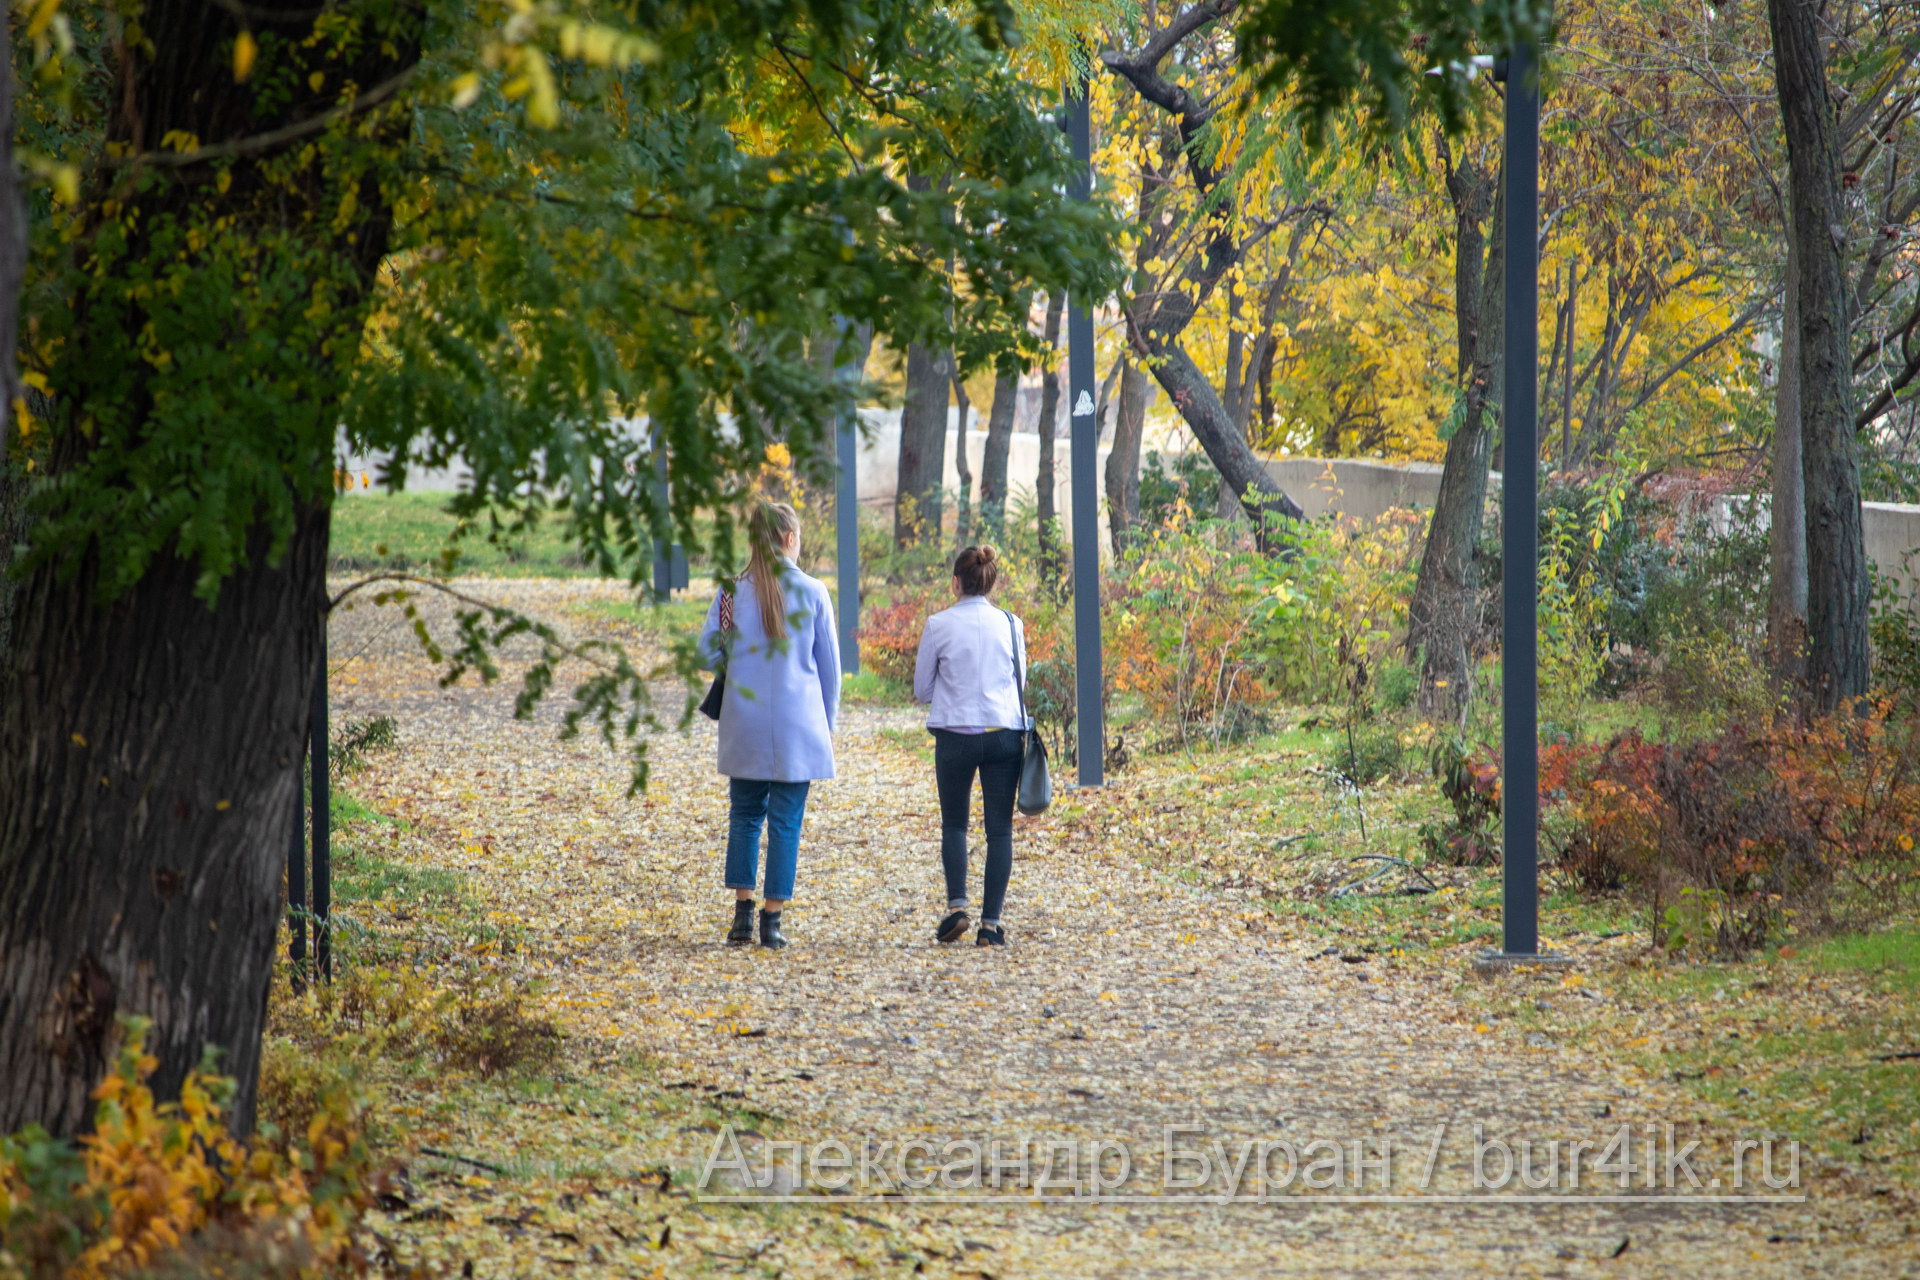 Идут две девушки по пути в город среди опавших листьев - Украина, Одесса, 09,11,2019